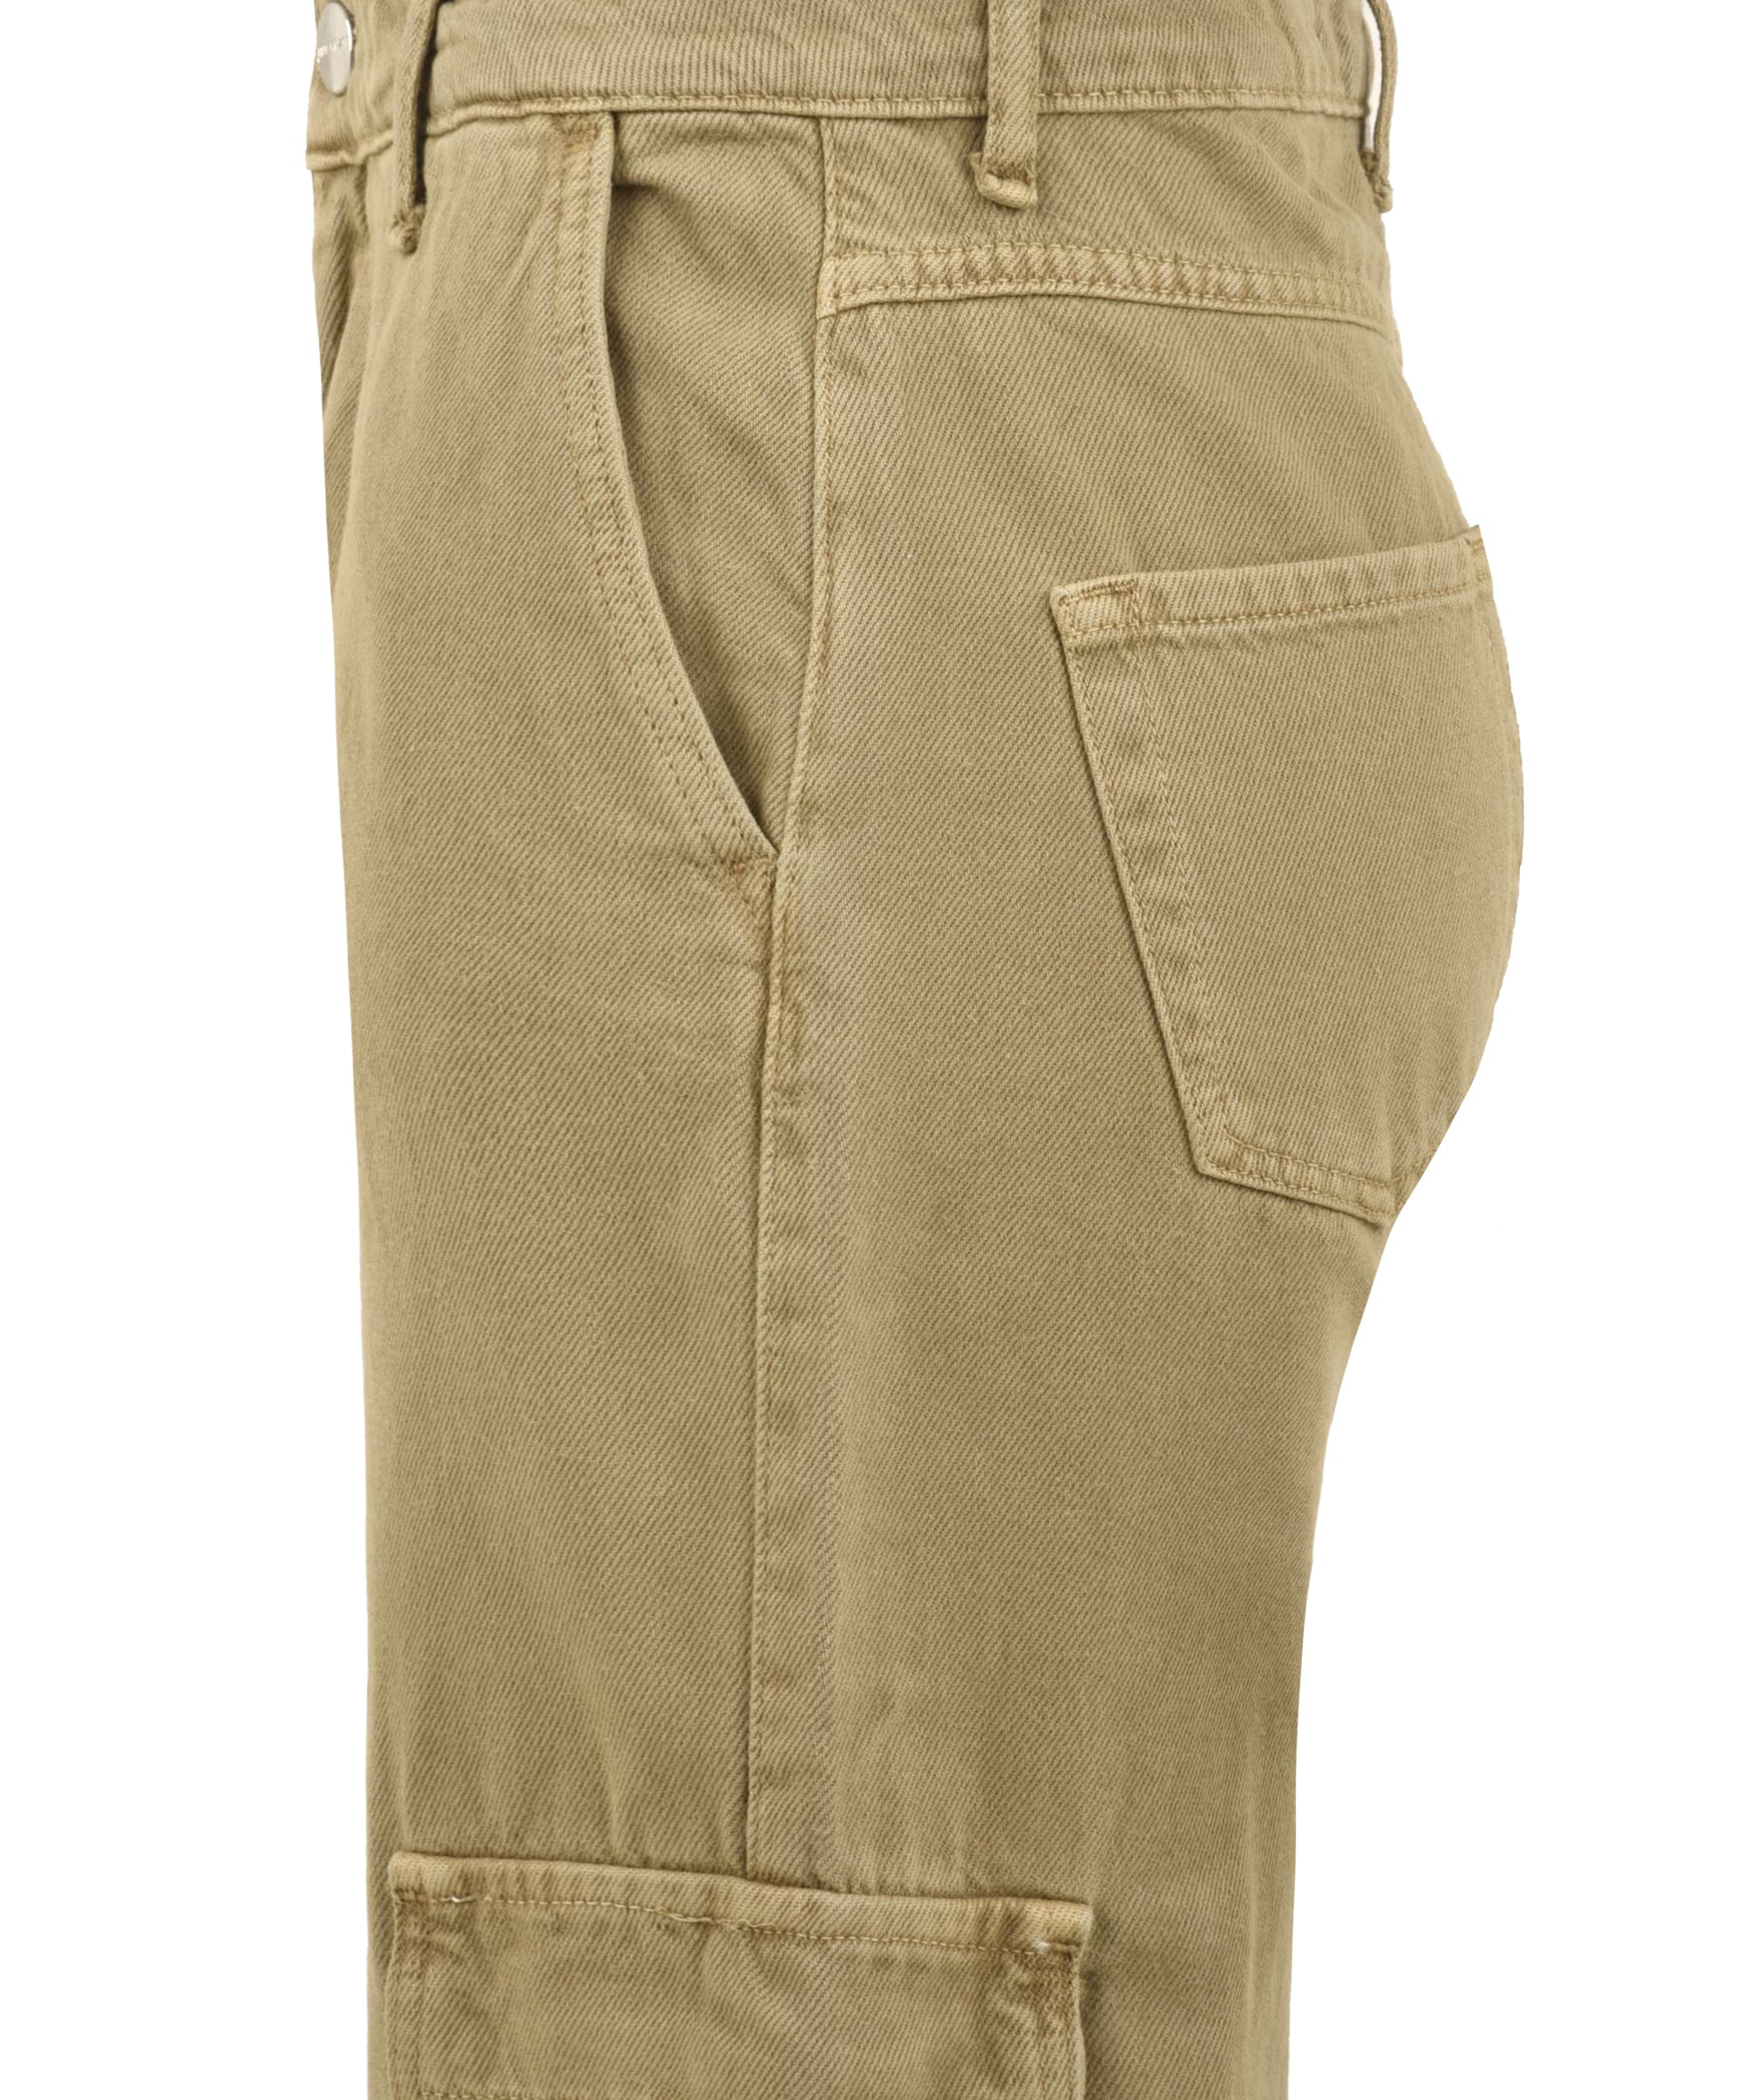 Pantalone donna con tasche cargo laterali in cotone